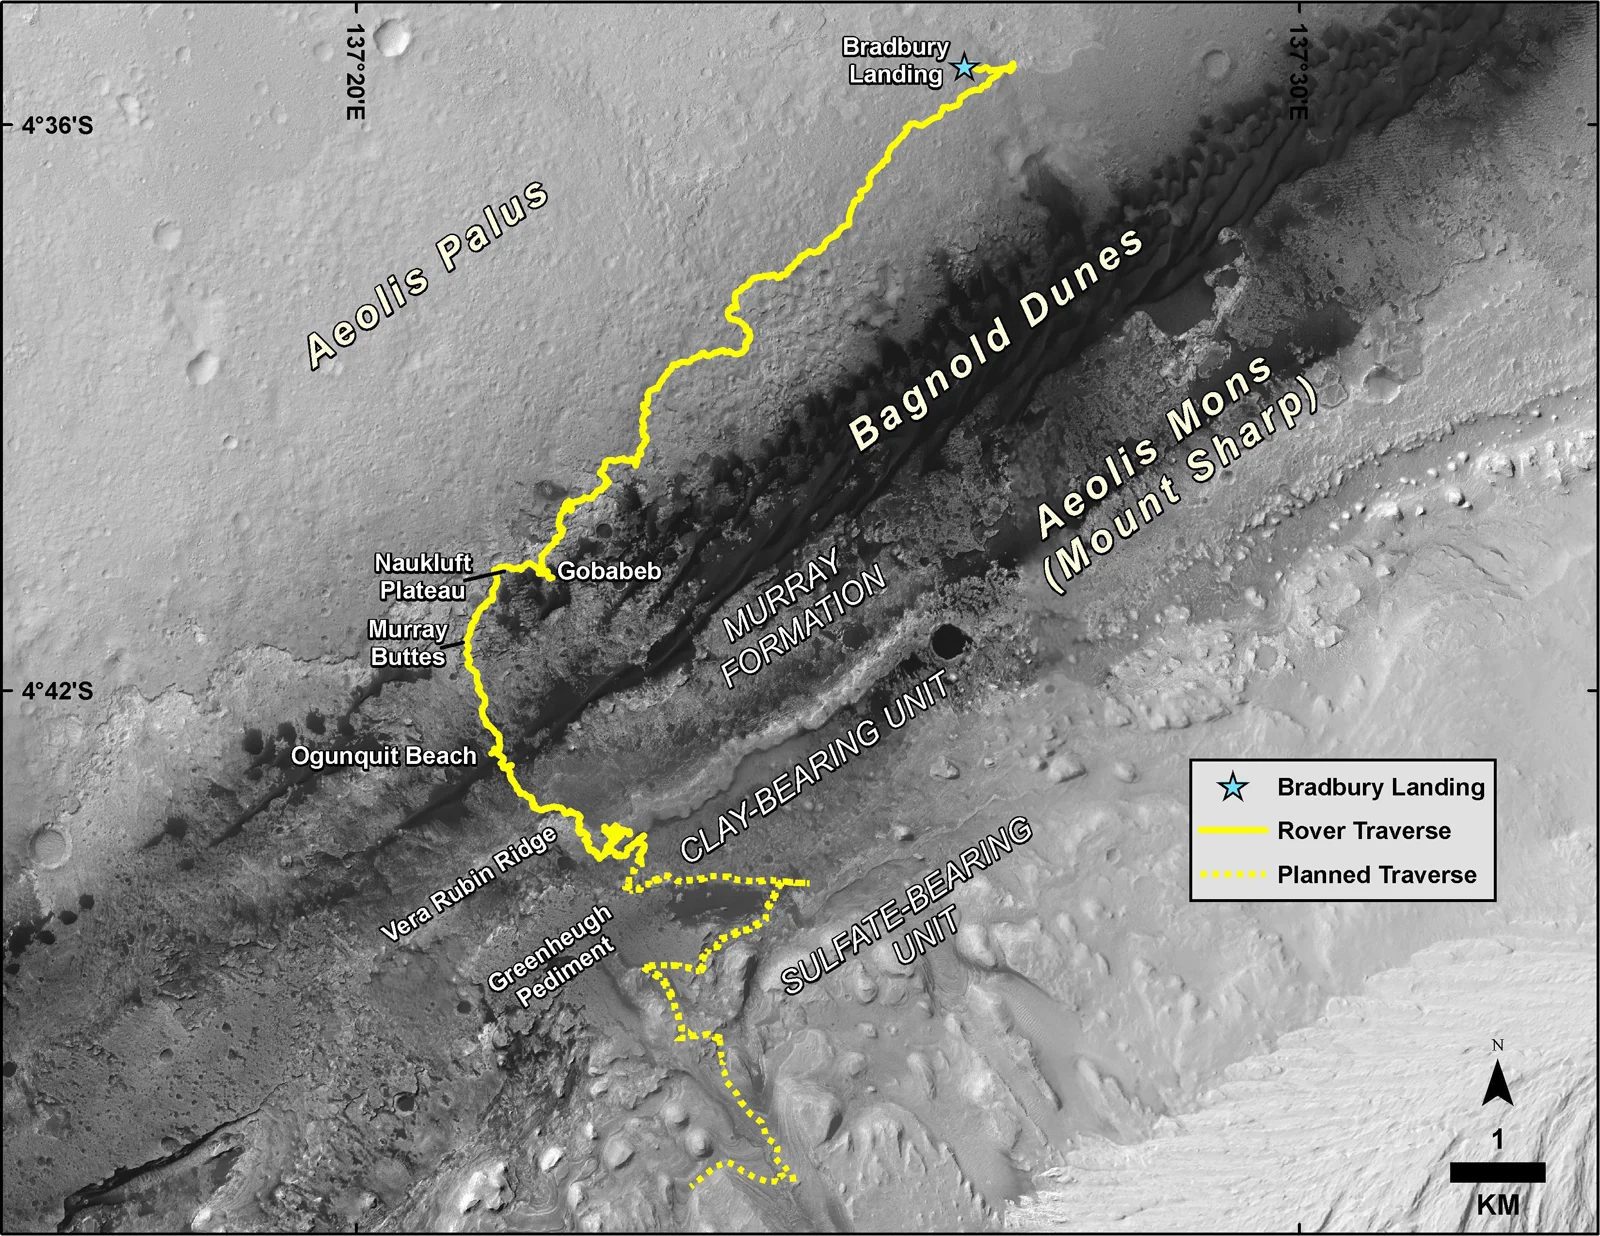 Curiosity-path-082012-082019-VeraRubinRidge-PIA23412 hires-NASA